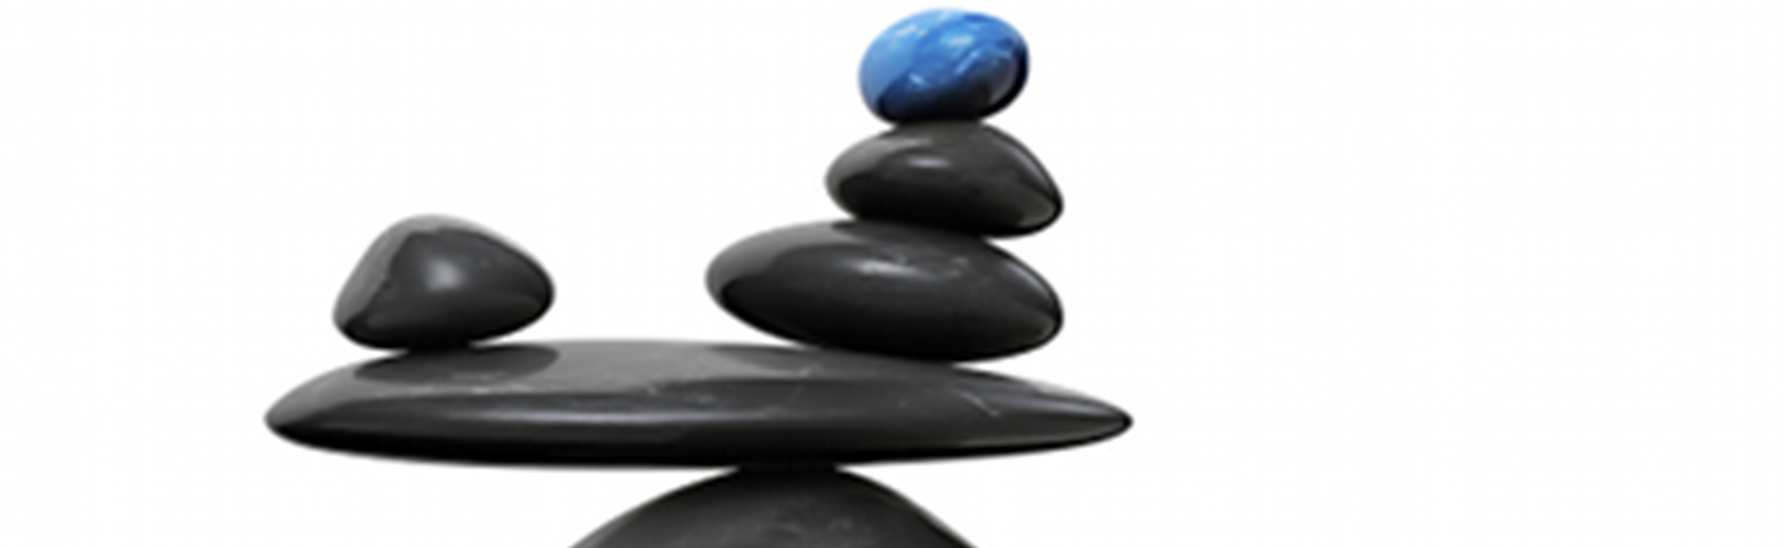 Dlaczego równoważenie jest ważne?